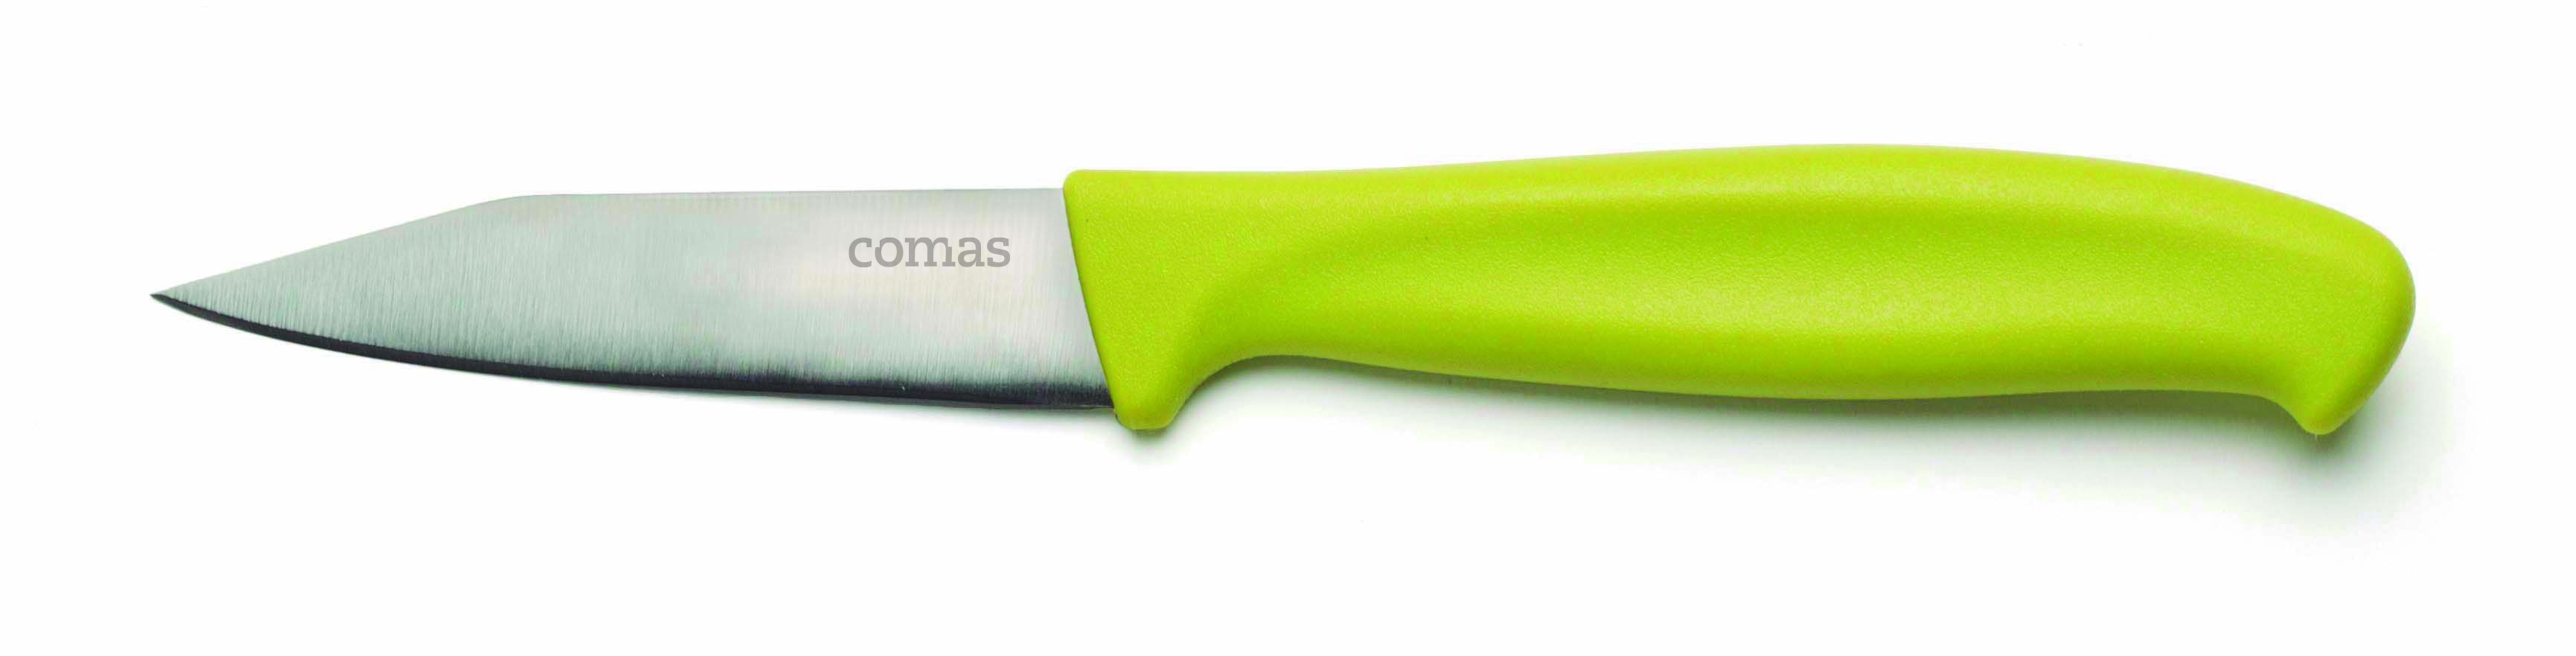 Μαχαίρι Λαχανικών-Ξεφλουδίσματος Πράσινο Comas 19,5εκ. CO07536000 (Σετ 2 Τεμάχια) (Χρώμα: Πράσινο ) - Comas - CO07536000